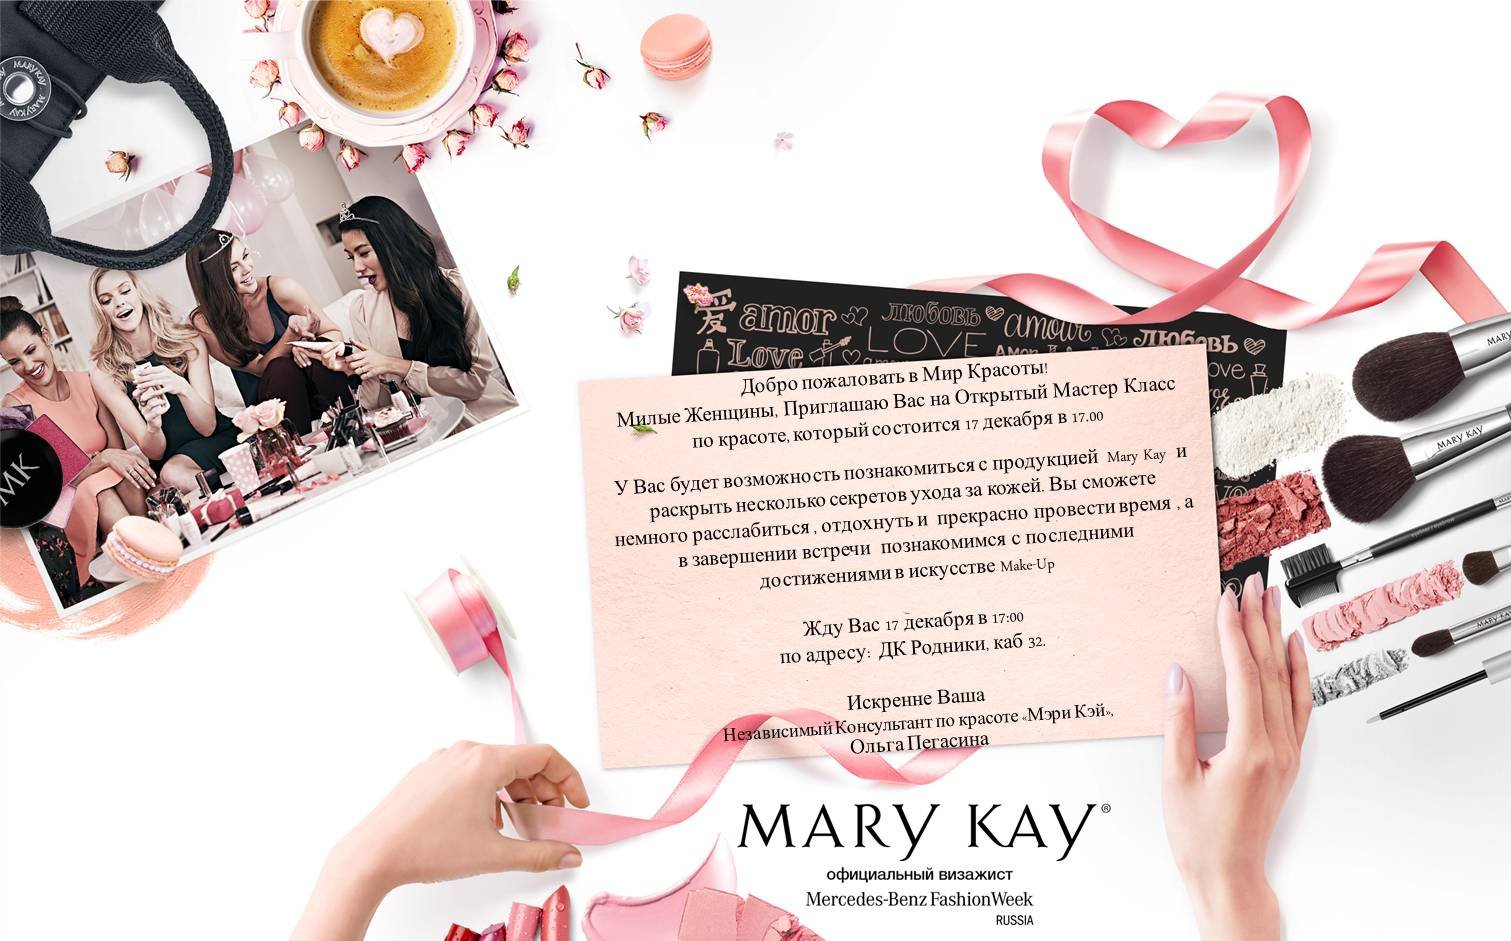 Marykayintouch ru личный кабинет. Приглашение на мастер класс Mary Kay.